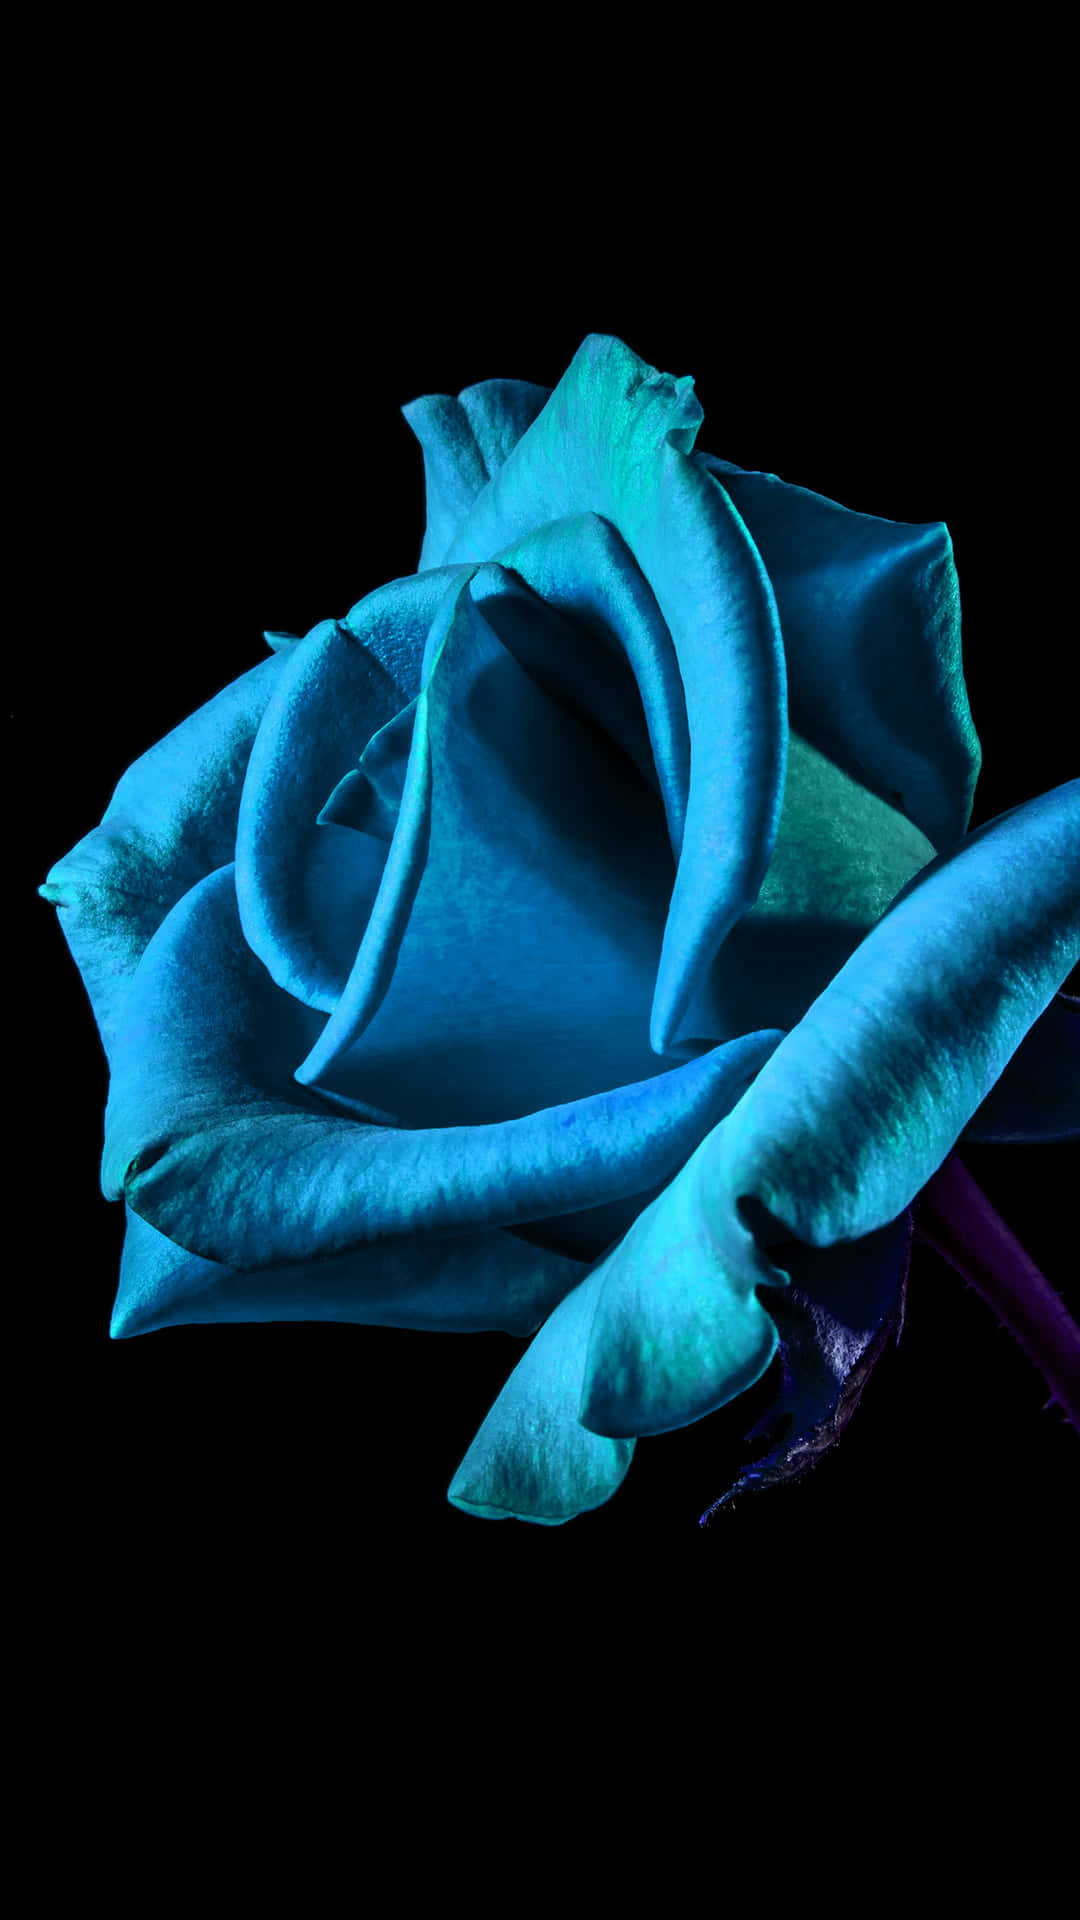 Blumeniphone Blaue Neonfarben Digitales Kunstbild